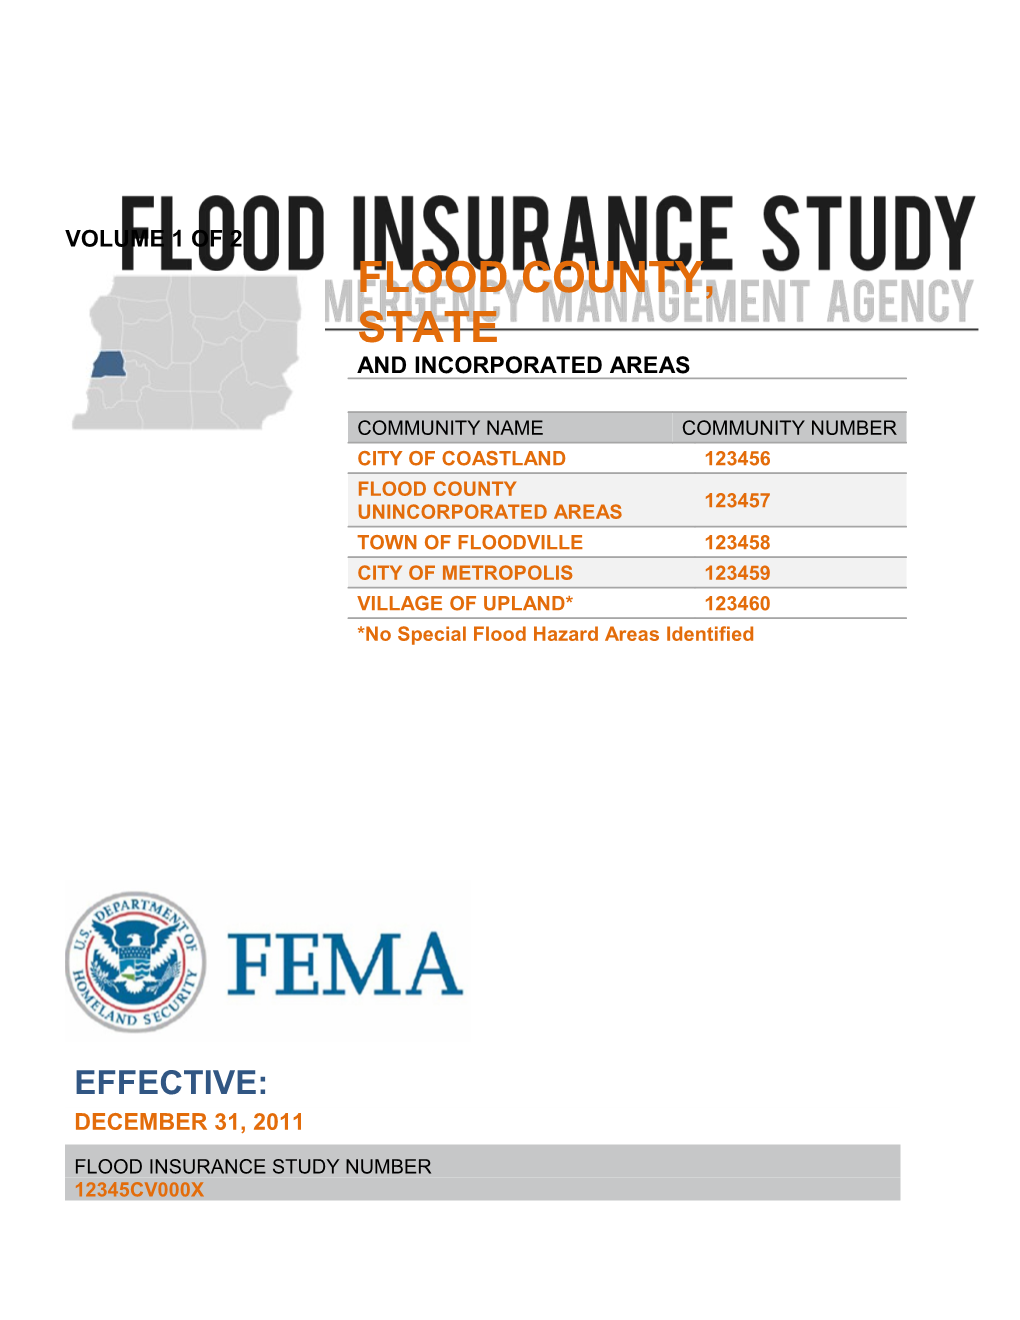 1.1The National Flood Insurance Program